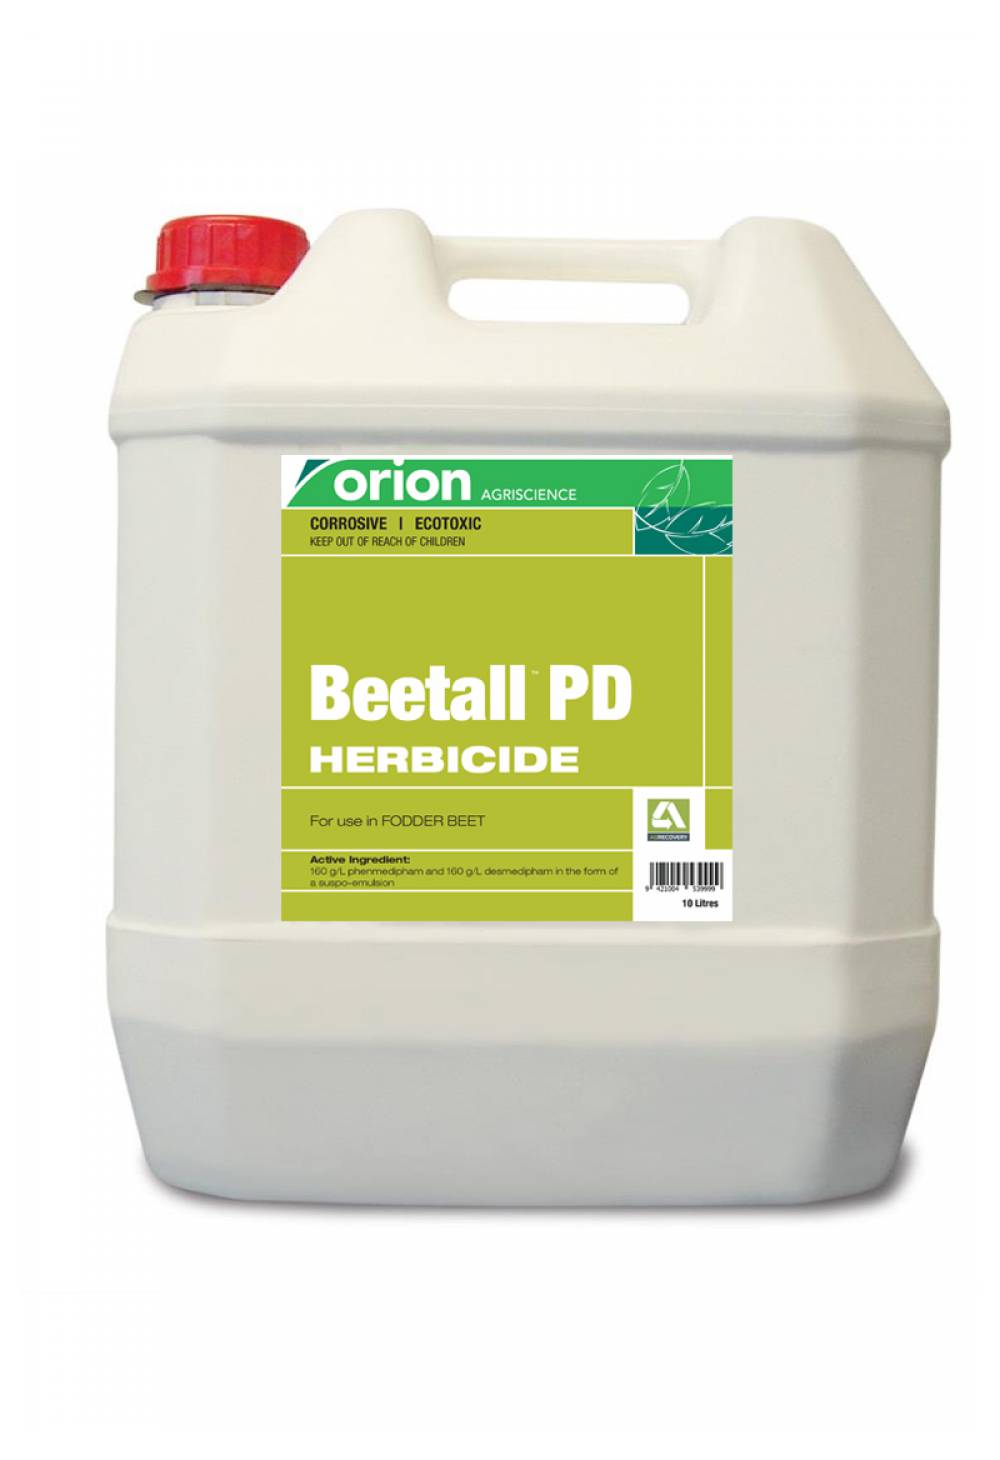 Beetall™ PD